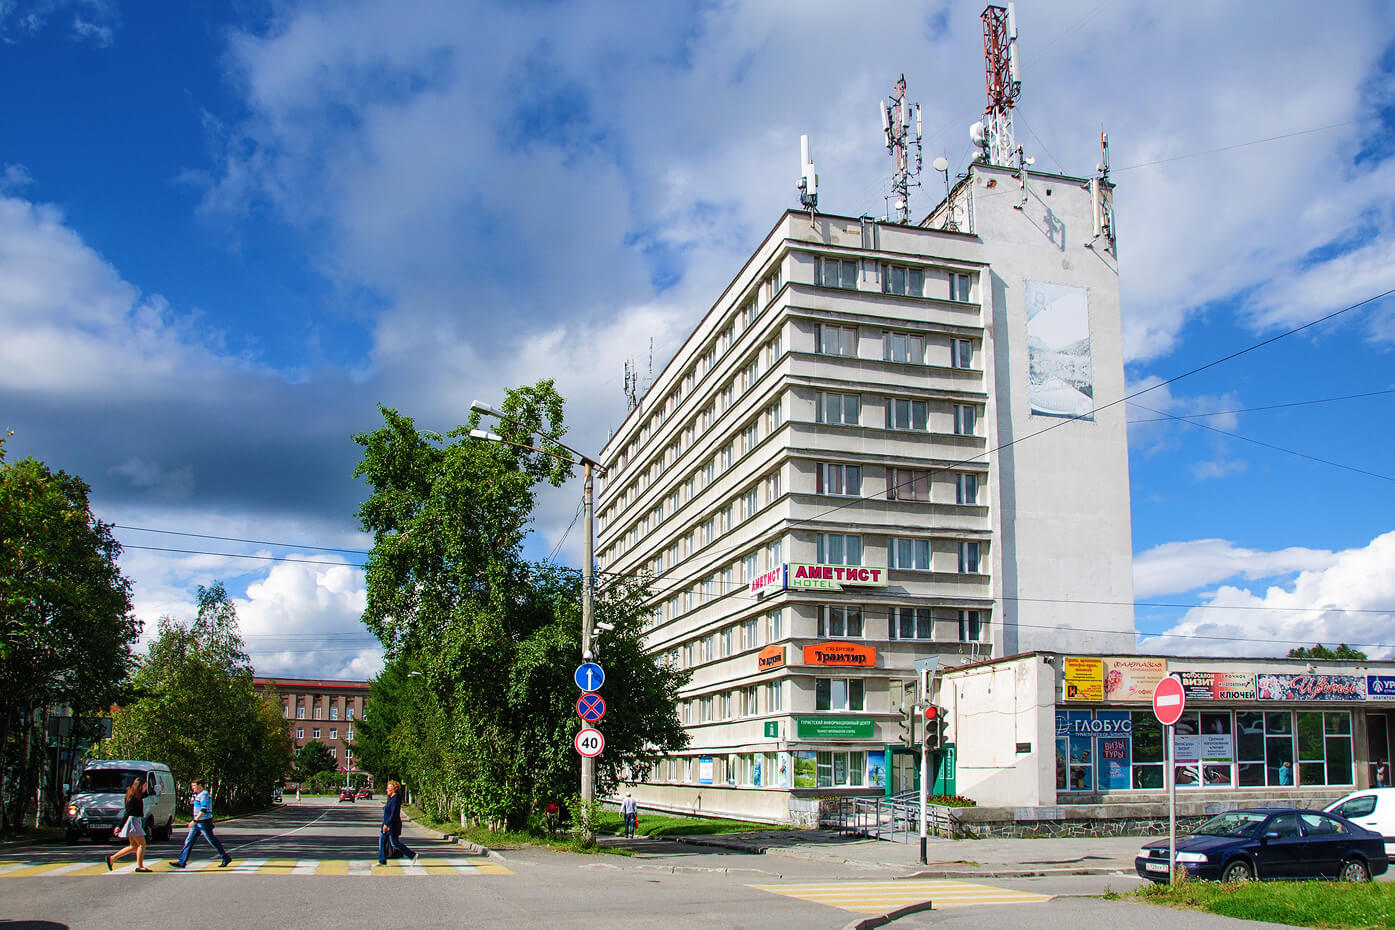 Здание отеля - пример советской архитектуры.